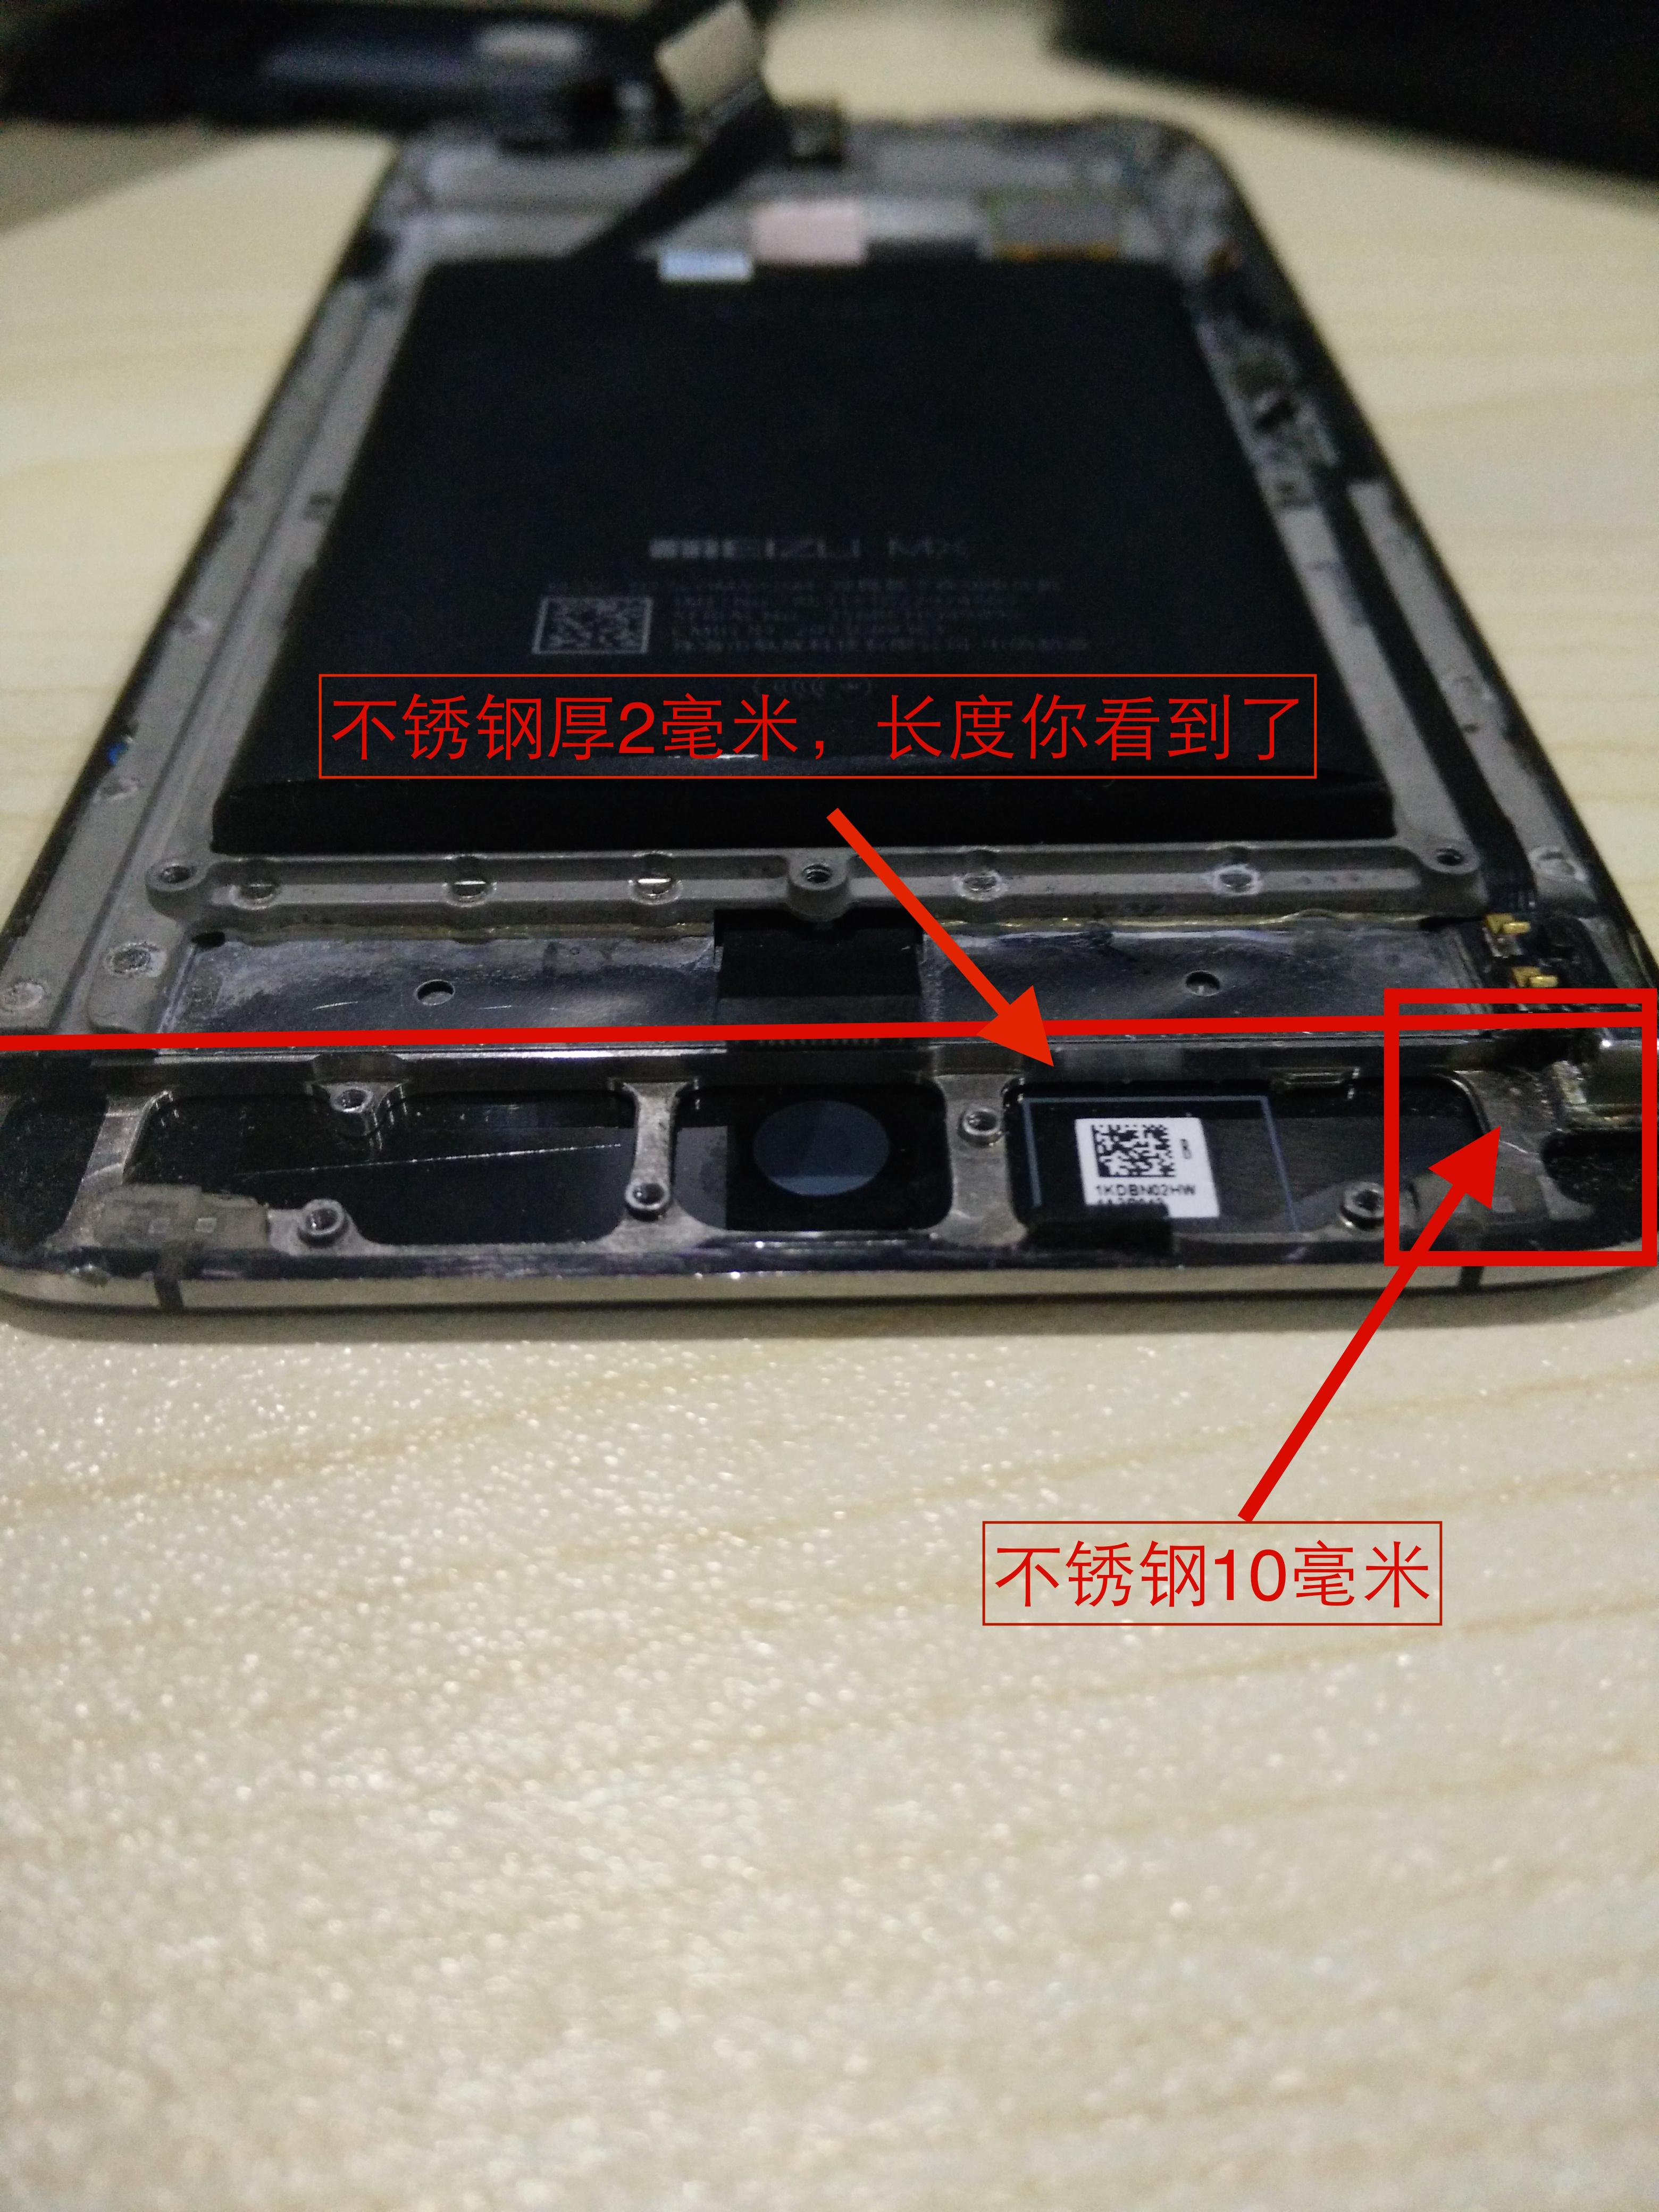 魅族 MX3 和小米 4 及 iPhone 4\/4s 的钢质边框